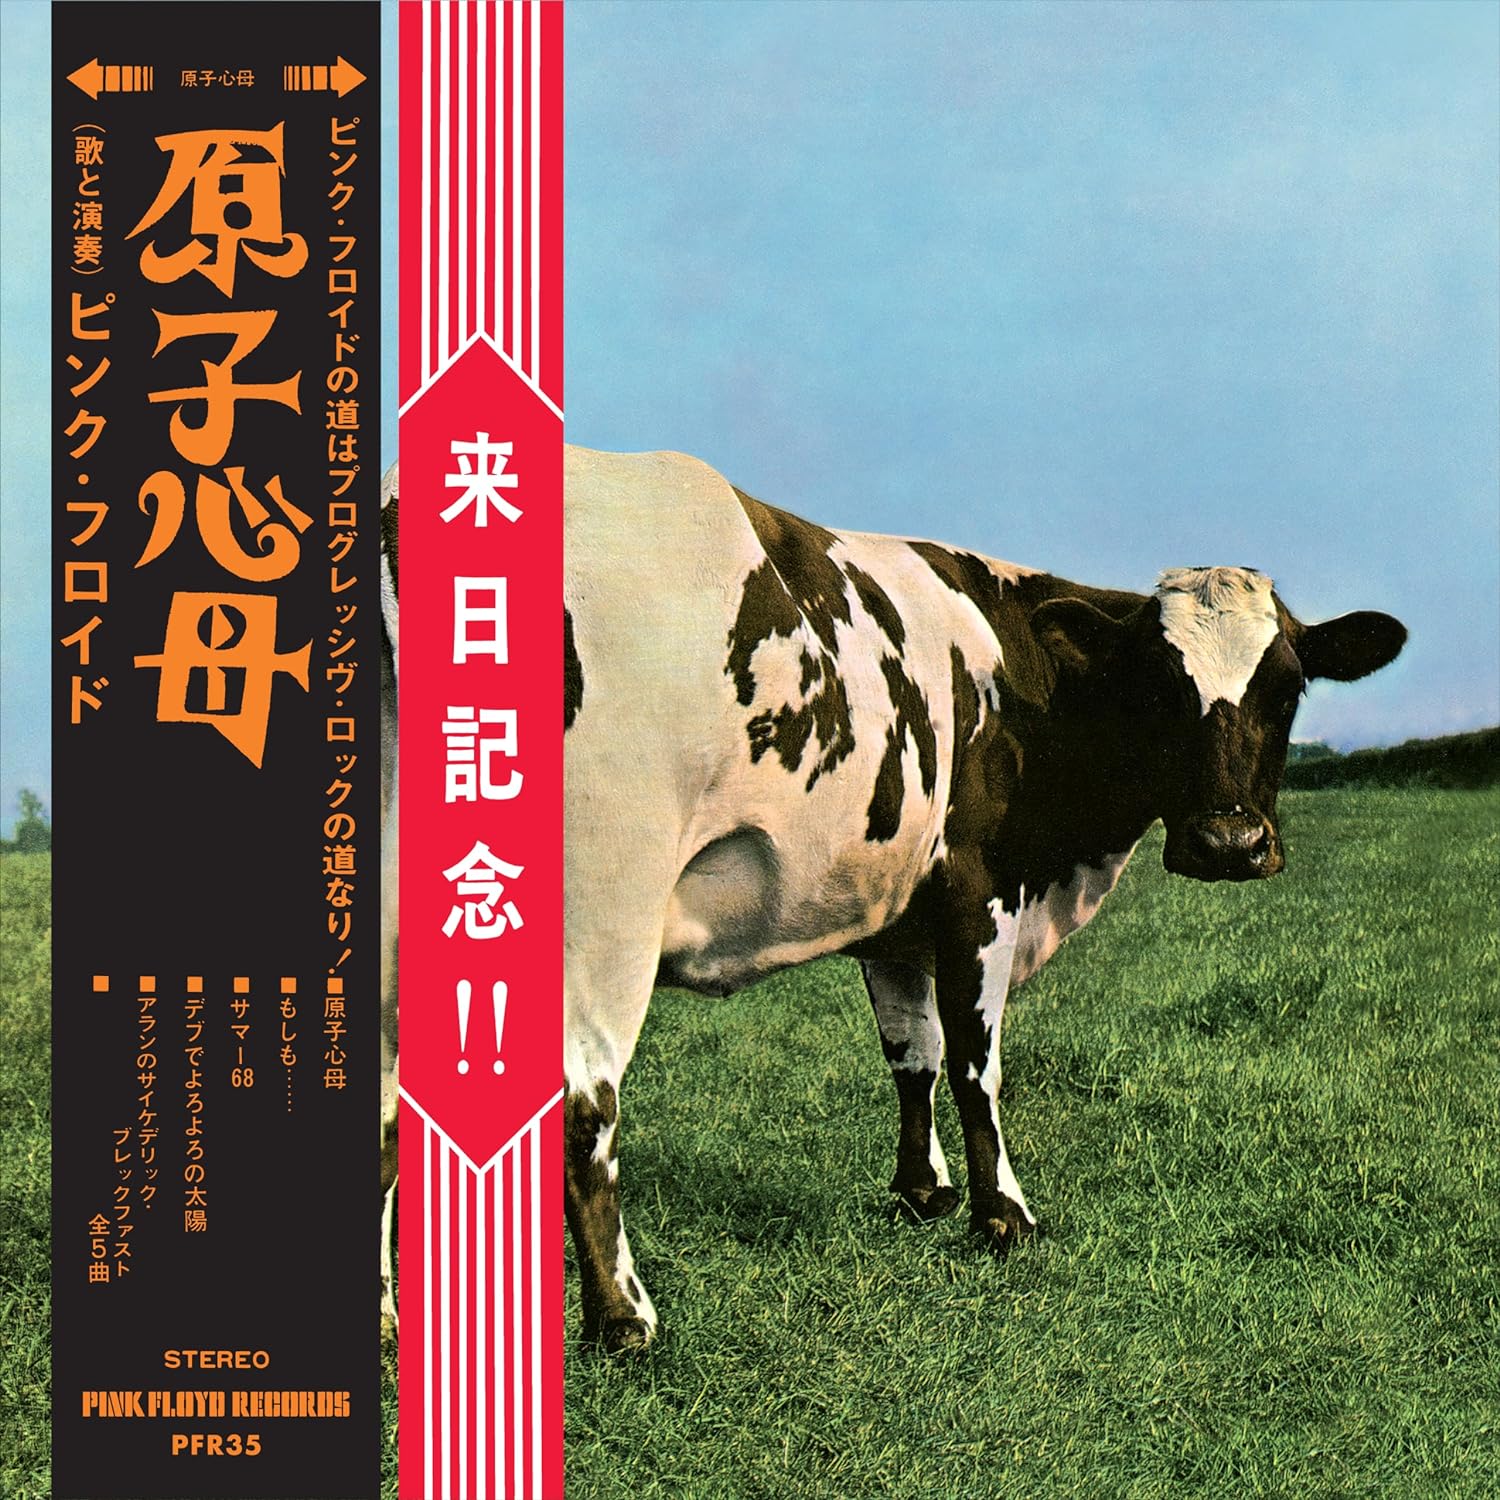 Music Blu-Ray Pink Floyd - Atom Heart Mother - Hakone Aphrodite Japan 1971 (Special Limited Edition Cd+Blu-Ray) NUOVO SIGILLATO, EDIZIONE DEL 08/12/2023 SUBITO DISPONIBILE